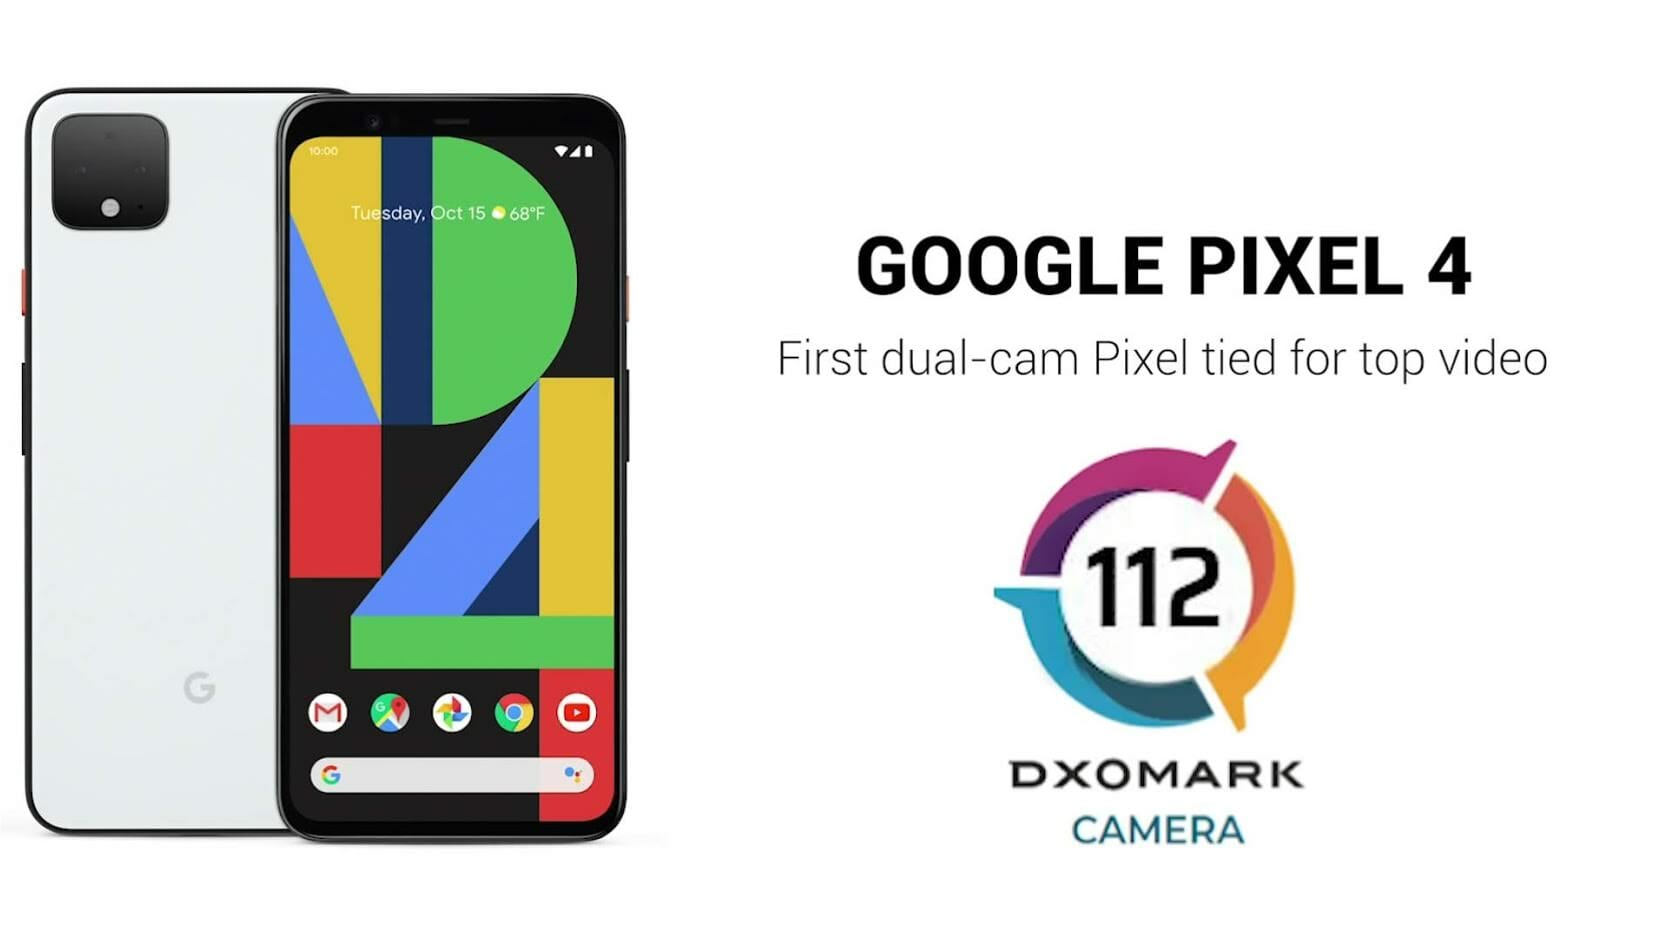 DxOMark ให้คะแนนกล้อง Google Pixel 4 รวม 112 คะแนน โดดเด่นด้านวิดีโอ 1